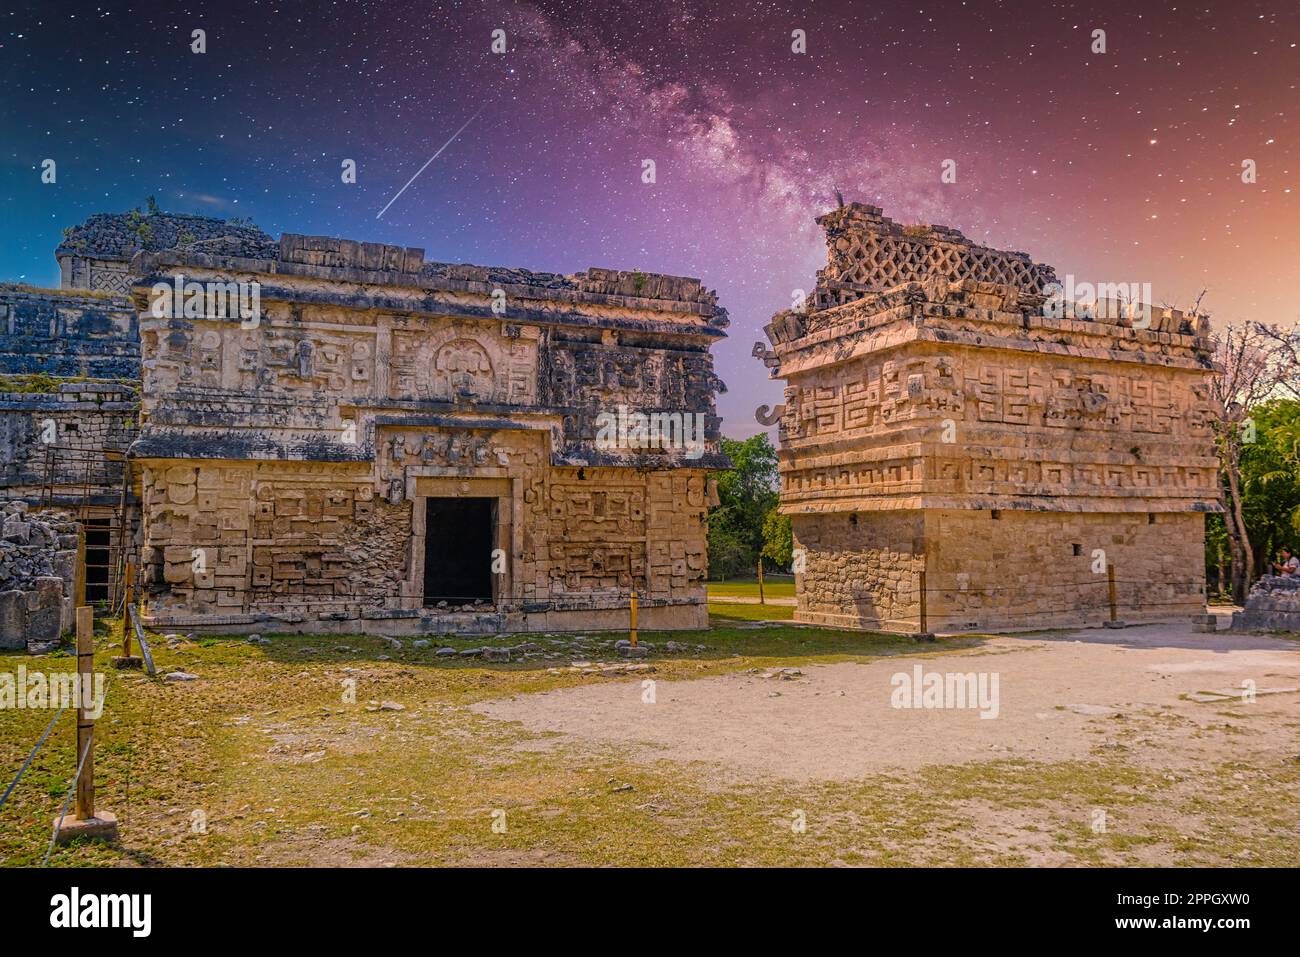 Adorare le chiese maya elaborate strutture di culto al dio della pioggia Chaac, complesso monastico, Chichen Itza, Yucatan, Messico, Civiltà Maya con la via Lattea Galaxy stelle cielo notturno Foto Stock